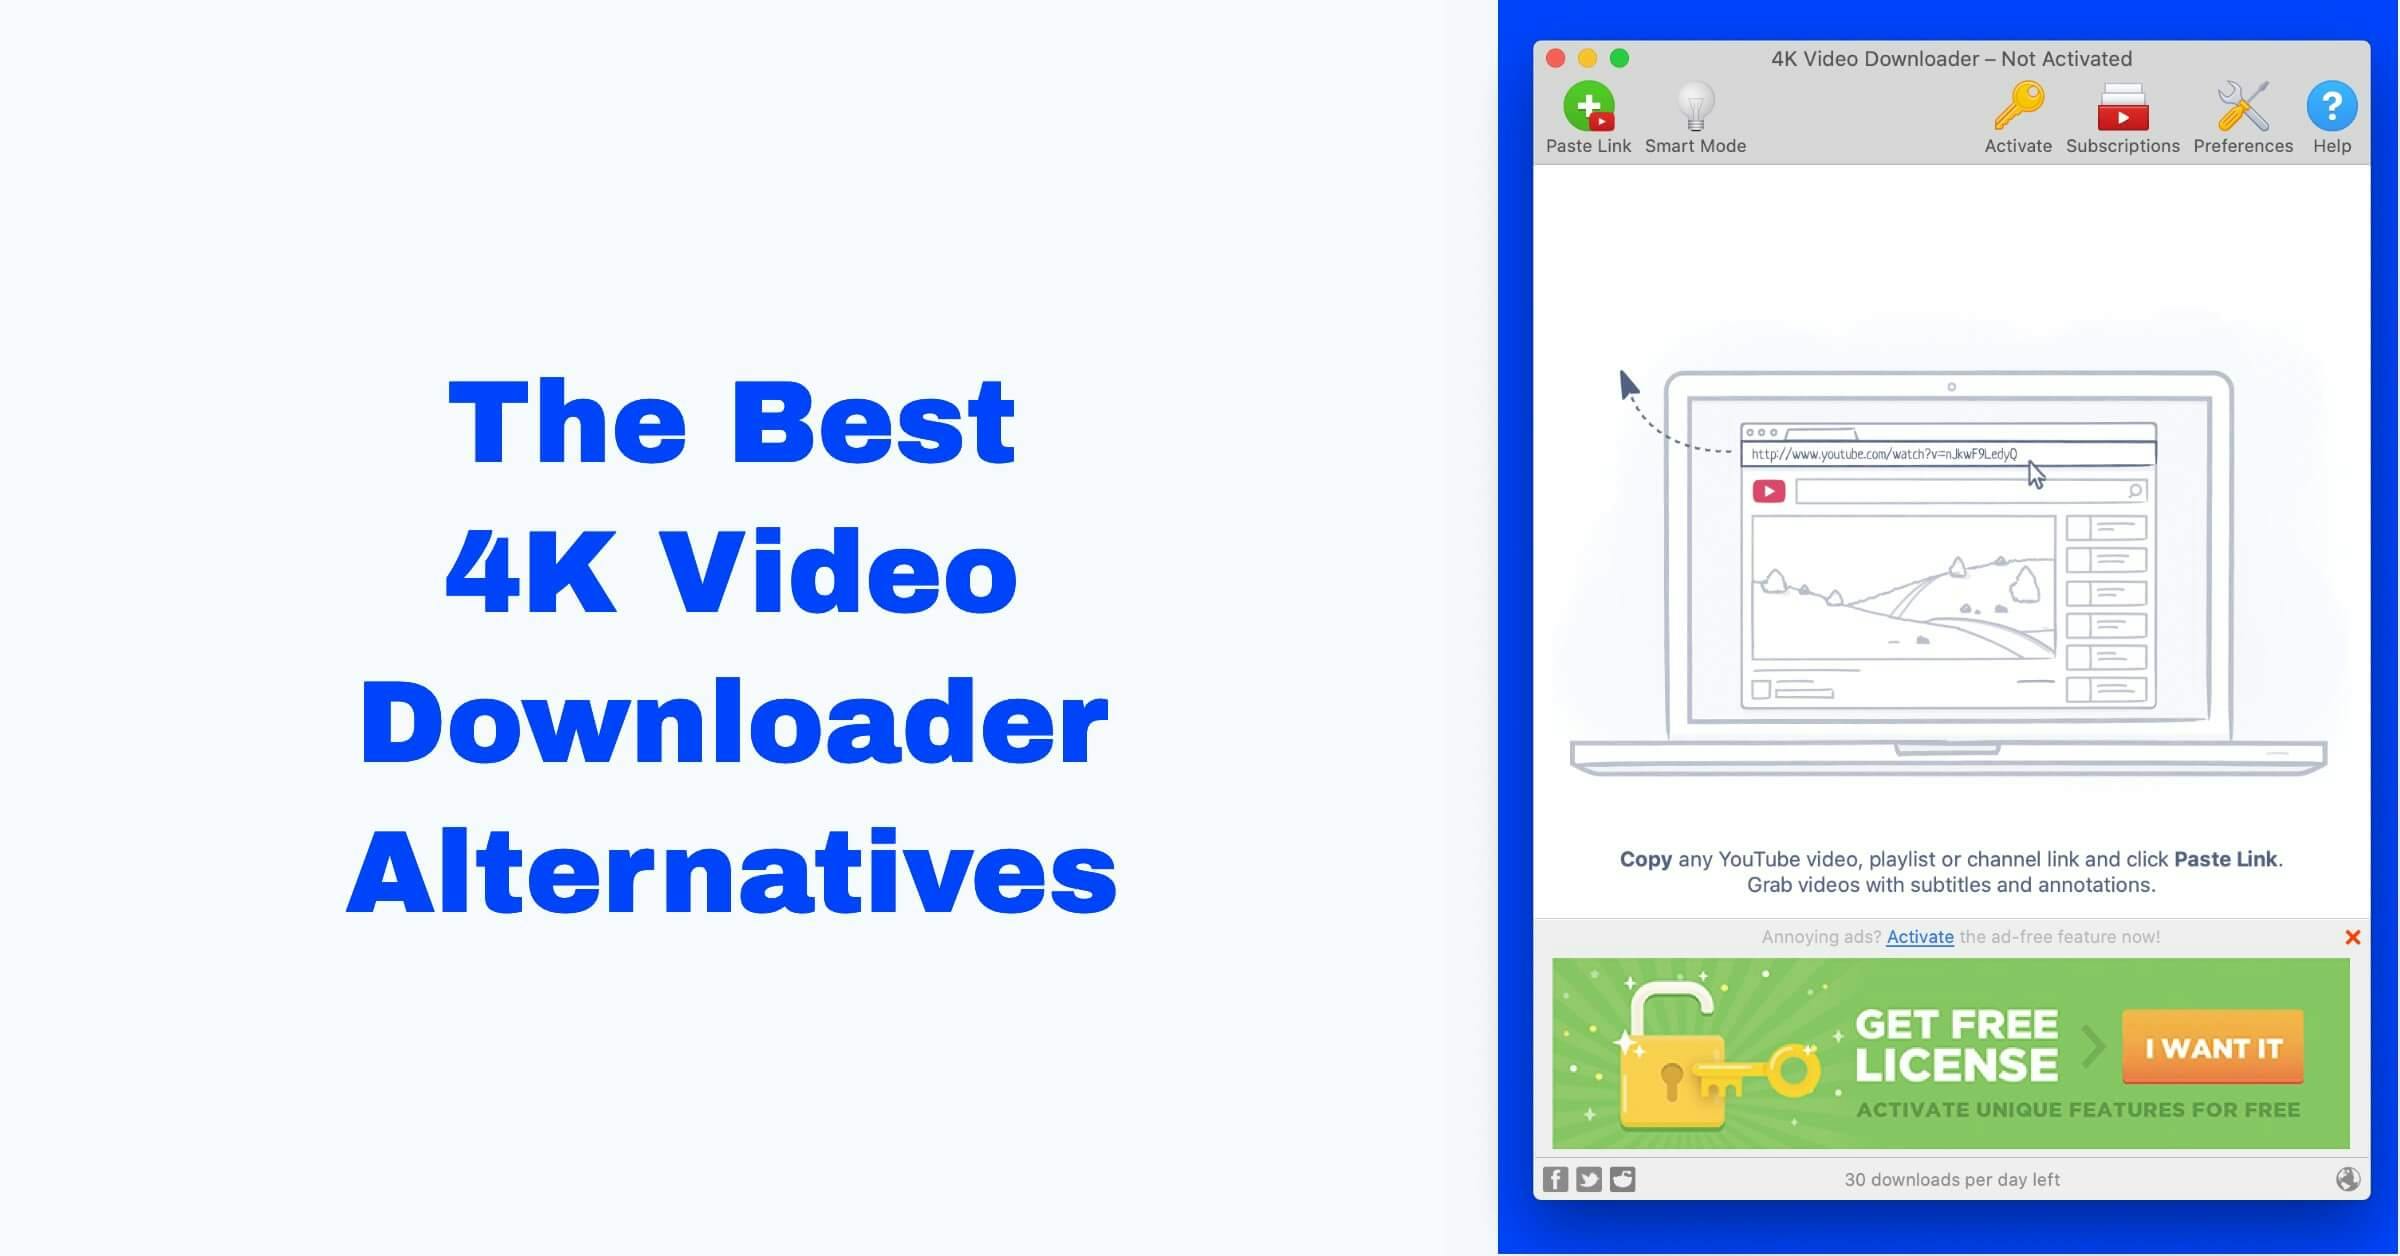 Top 5 Alternatives to 4K Video Downloader
